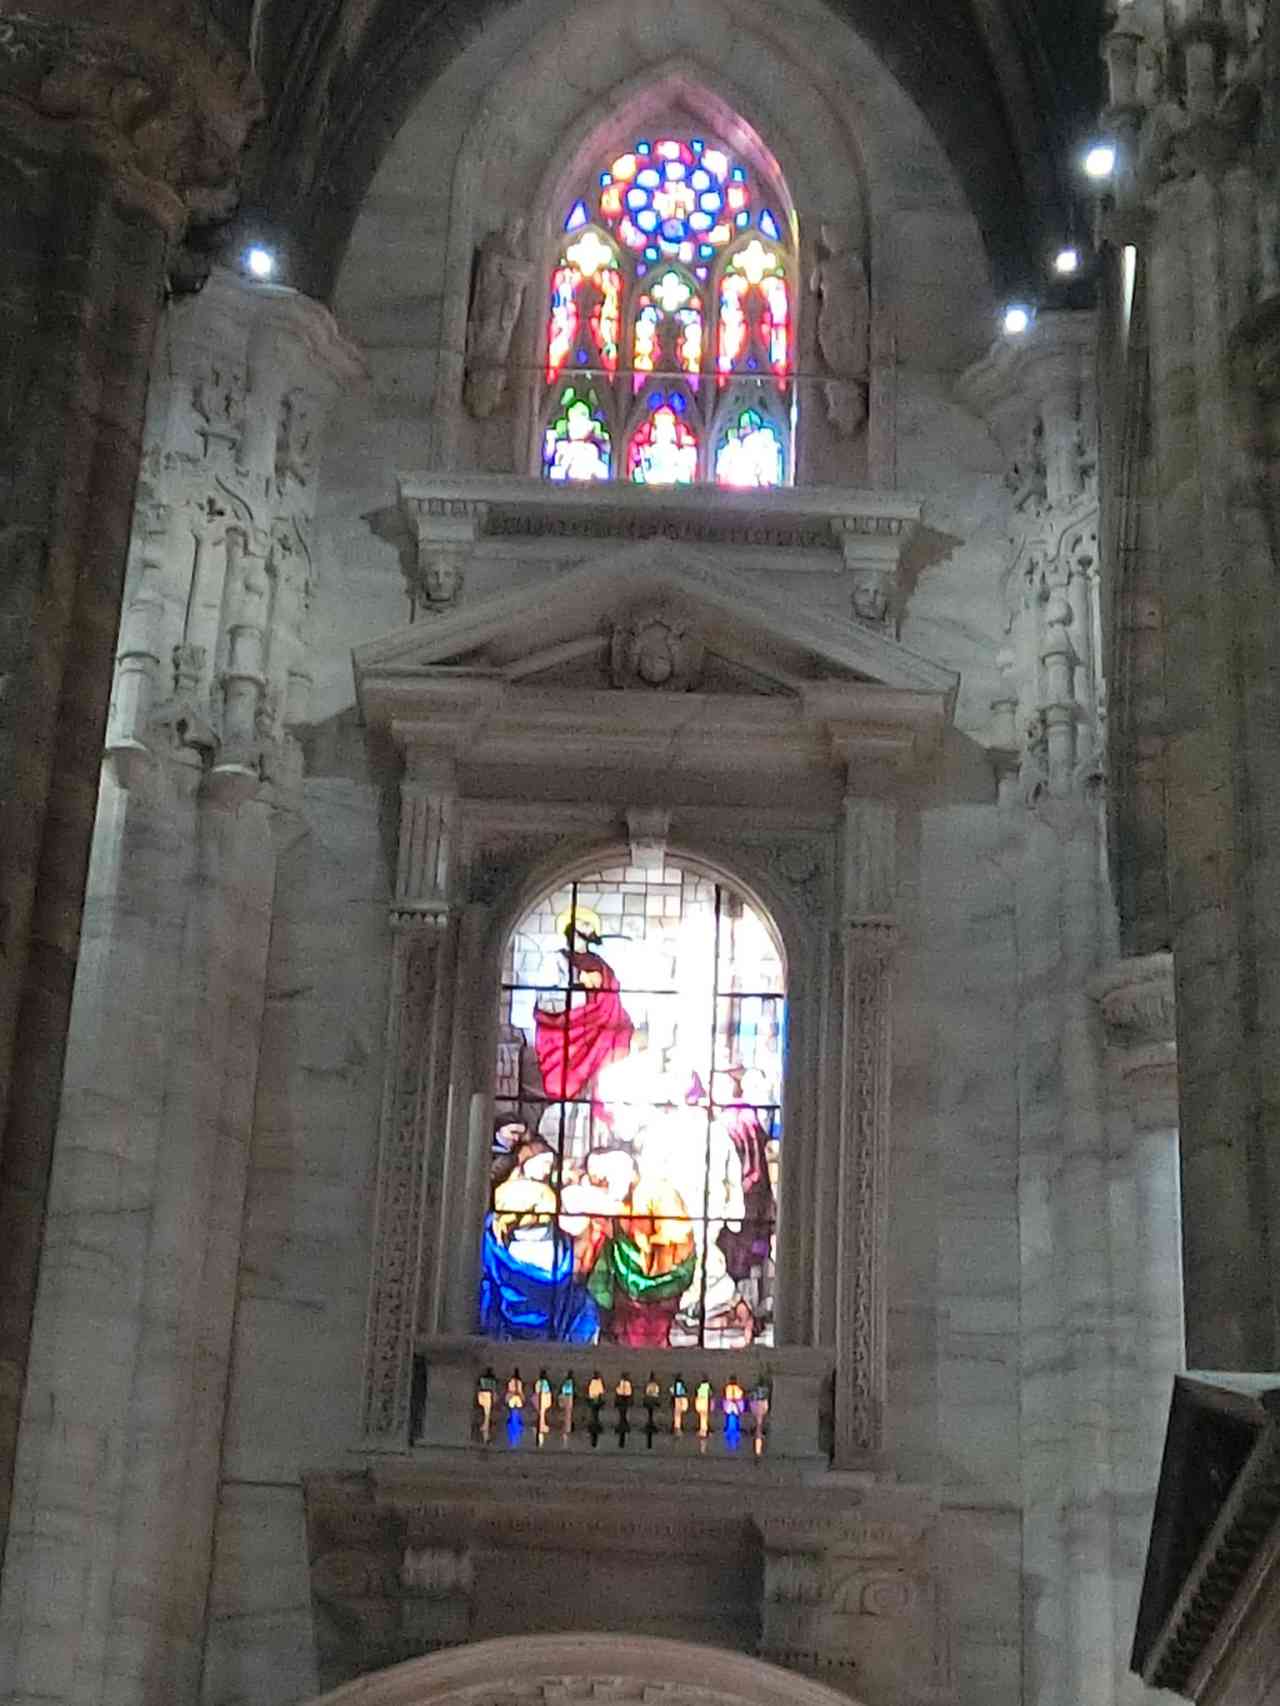 米蘭大教堂(Duomo di Milano)